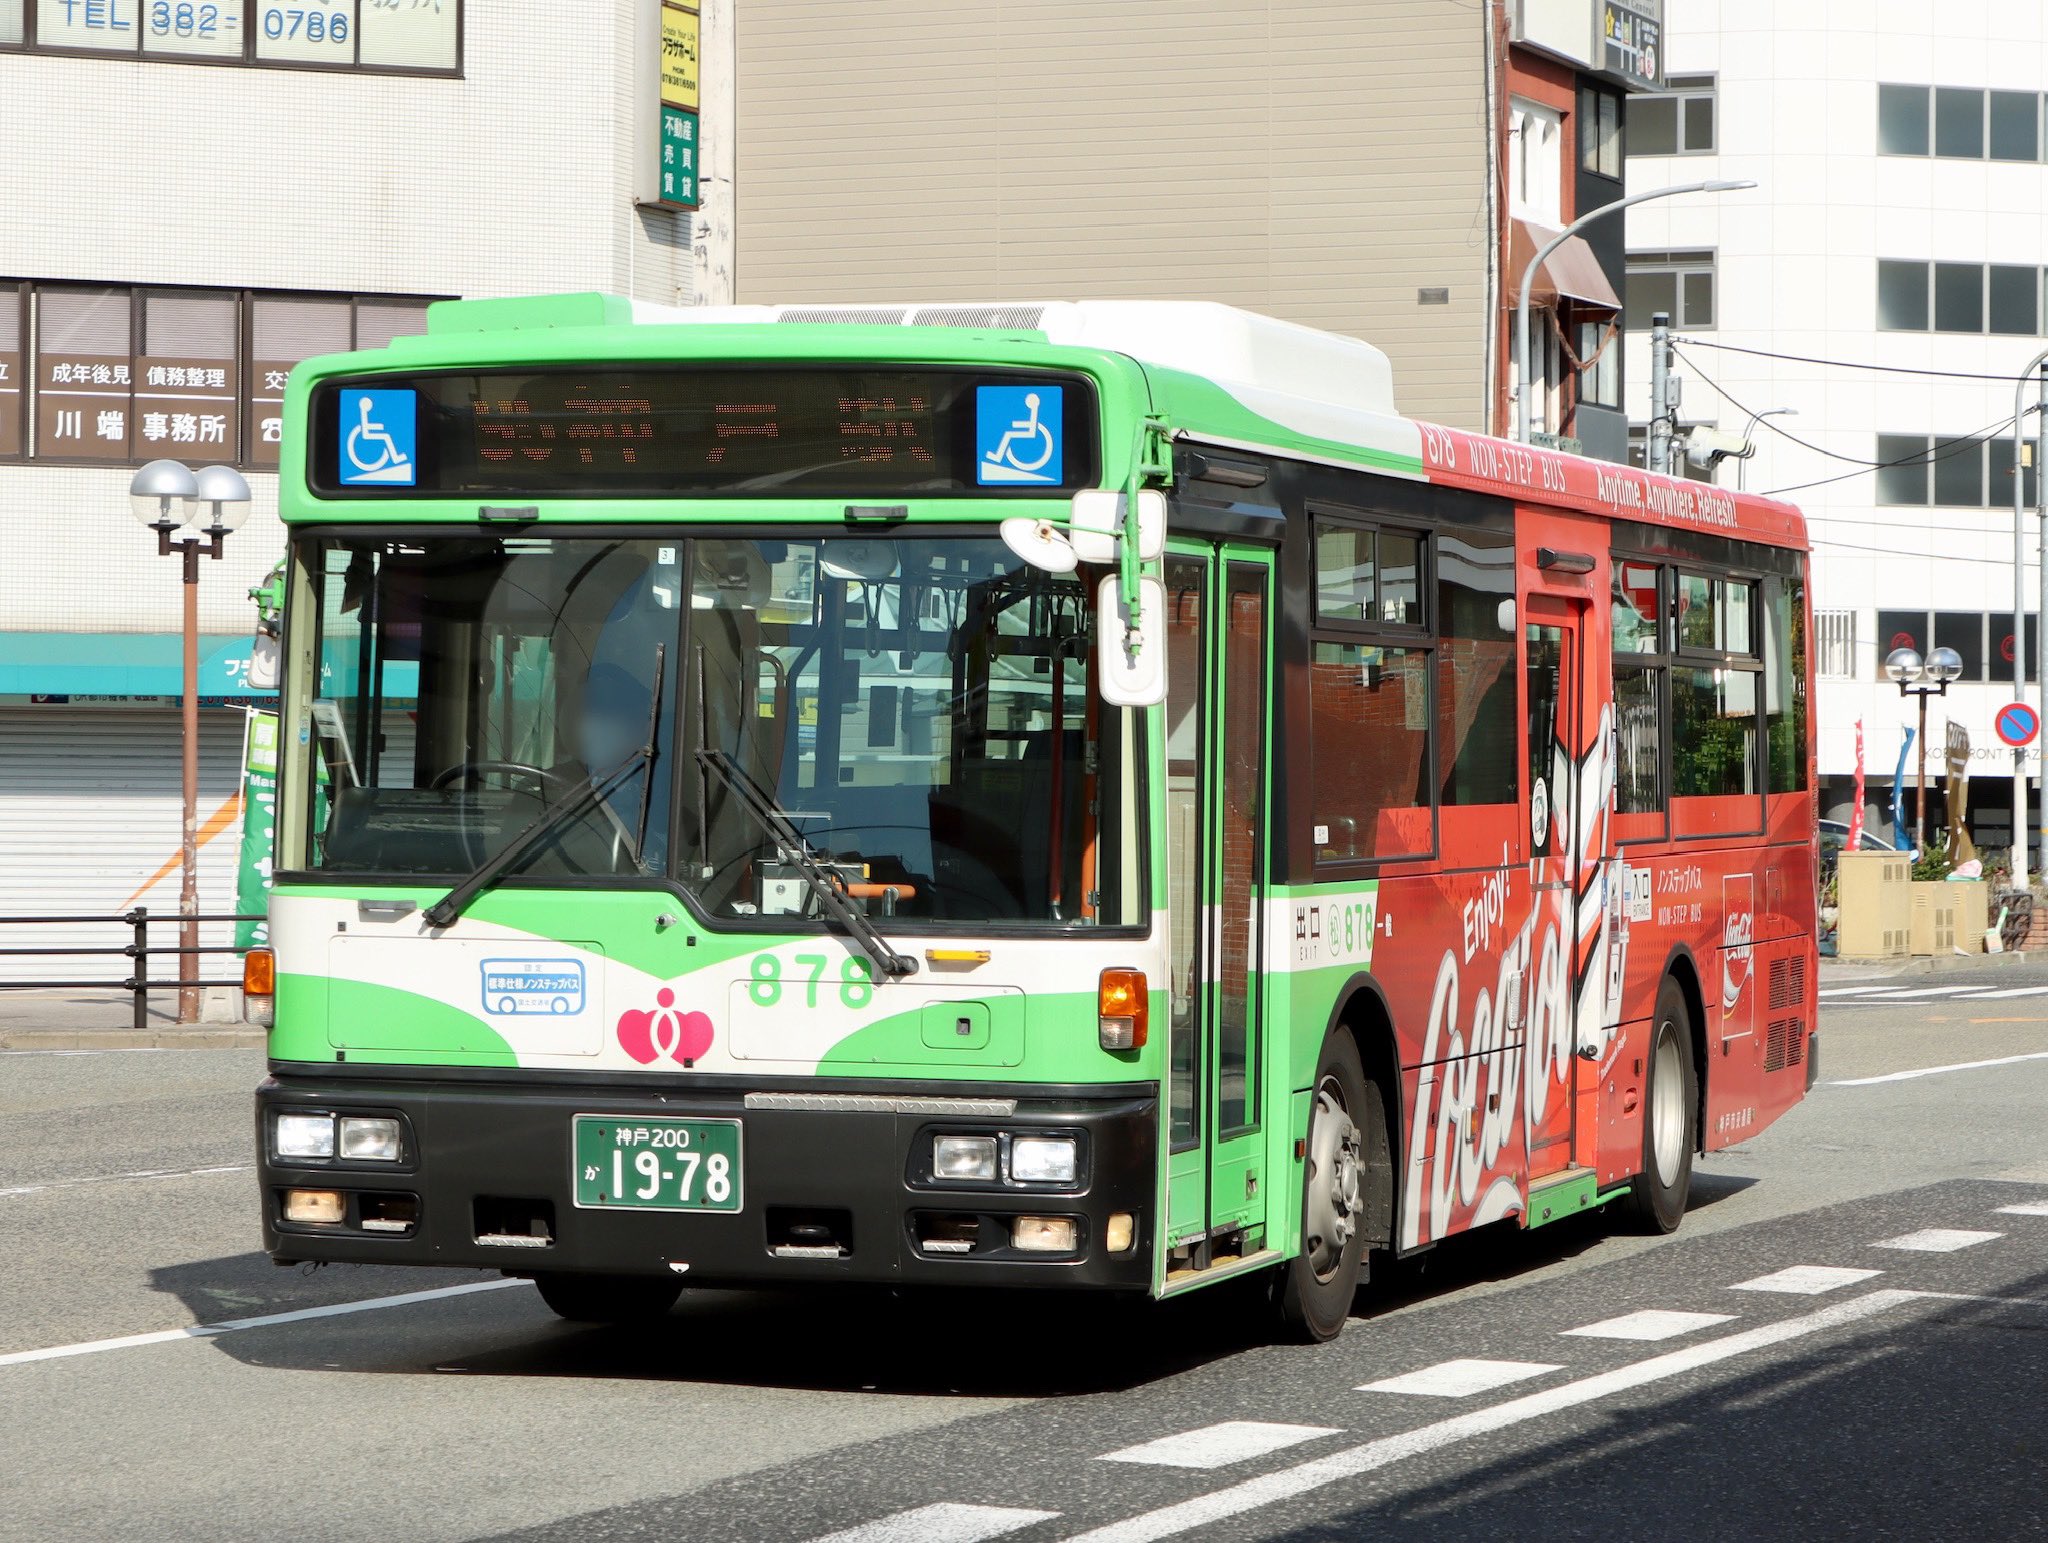 神戸市バス - Twitter Search / Twitter